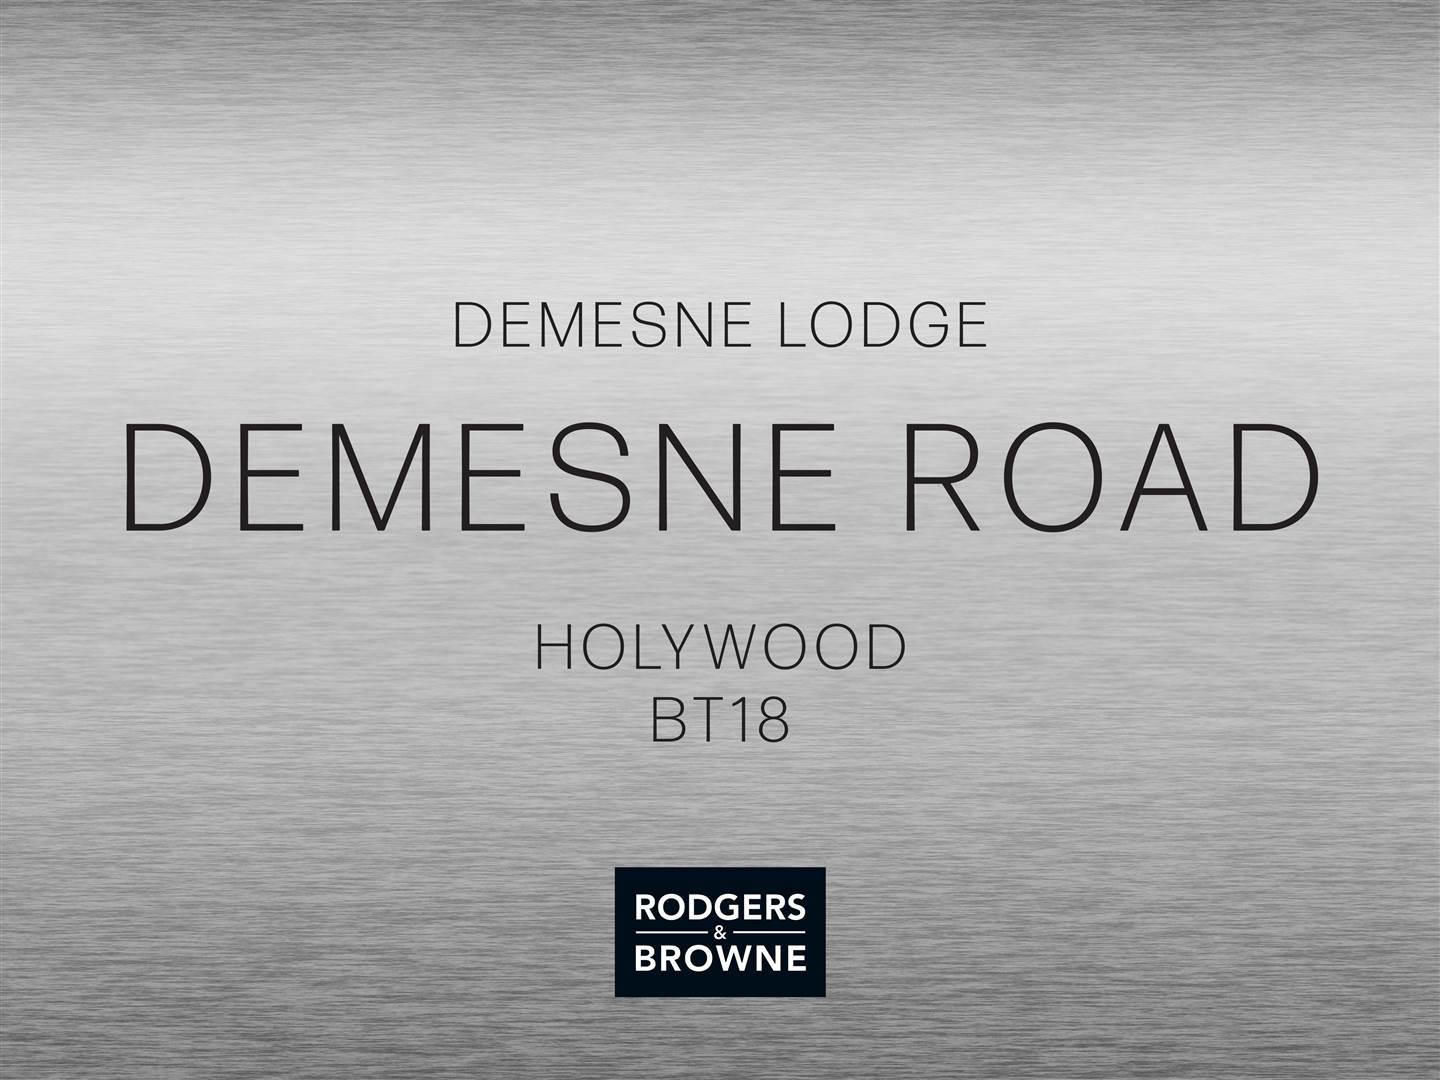 'Demesne Lodge' Demesne Road